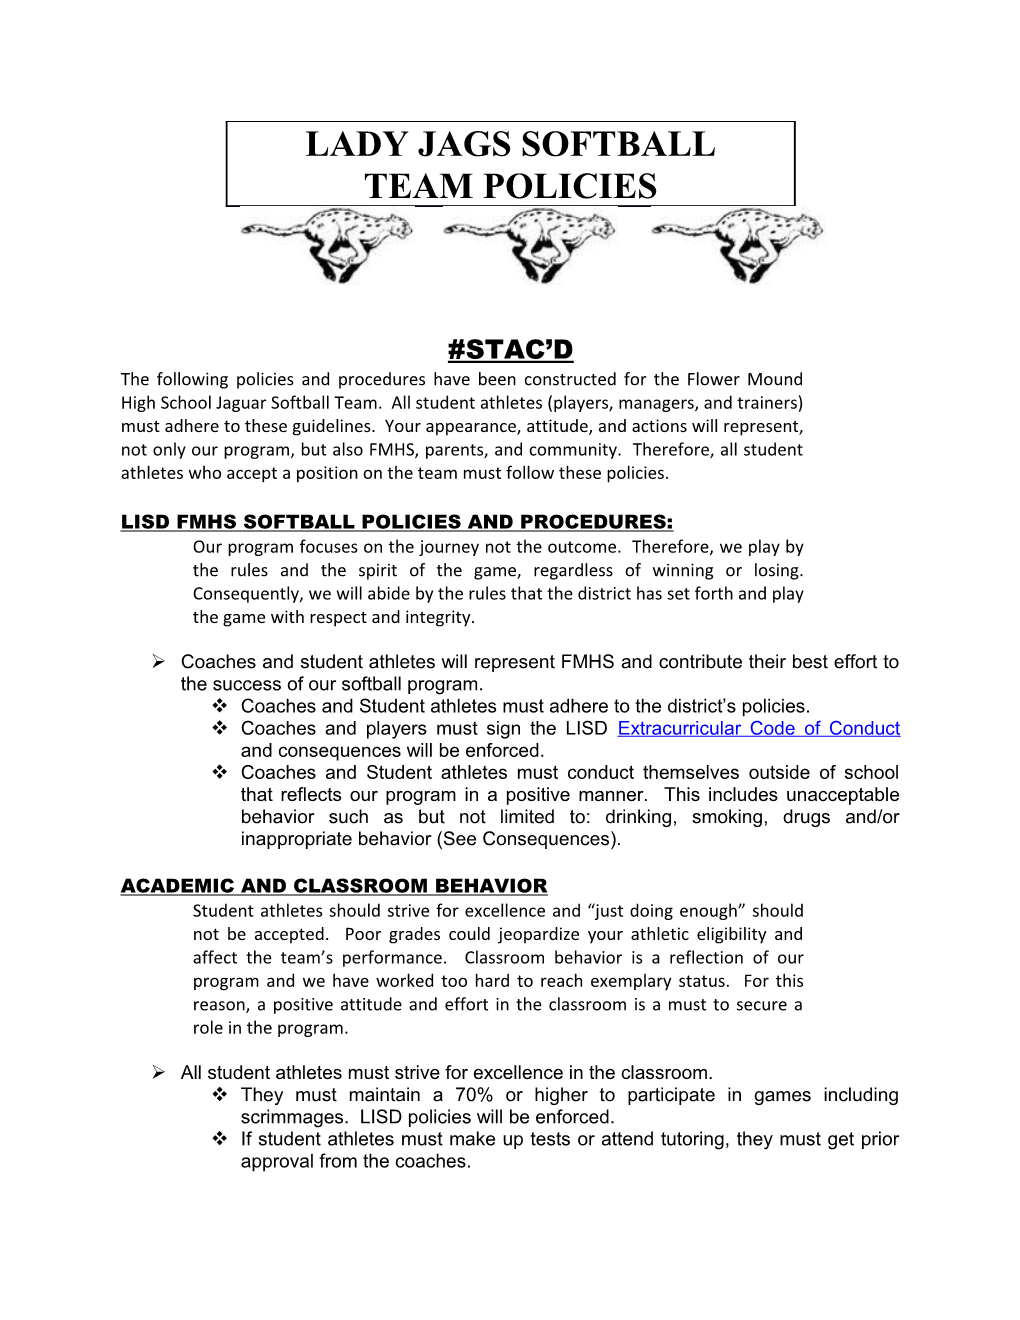 Lisd Fmhs Softball Policies and Procedures